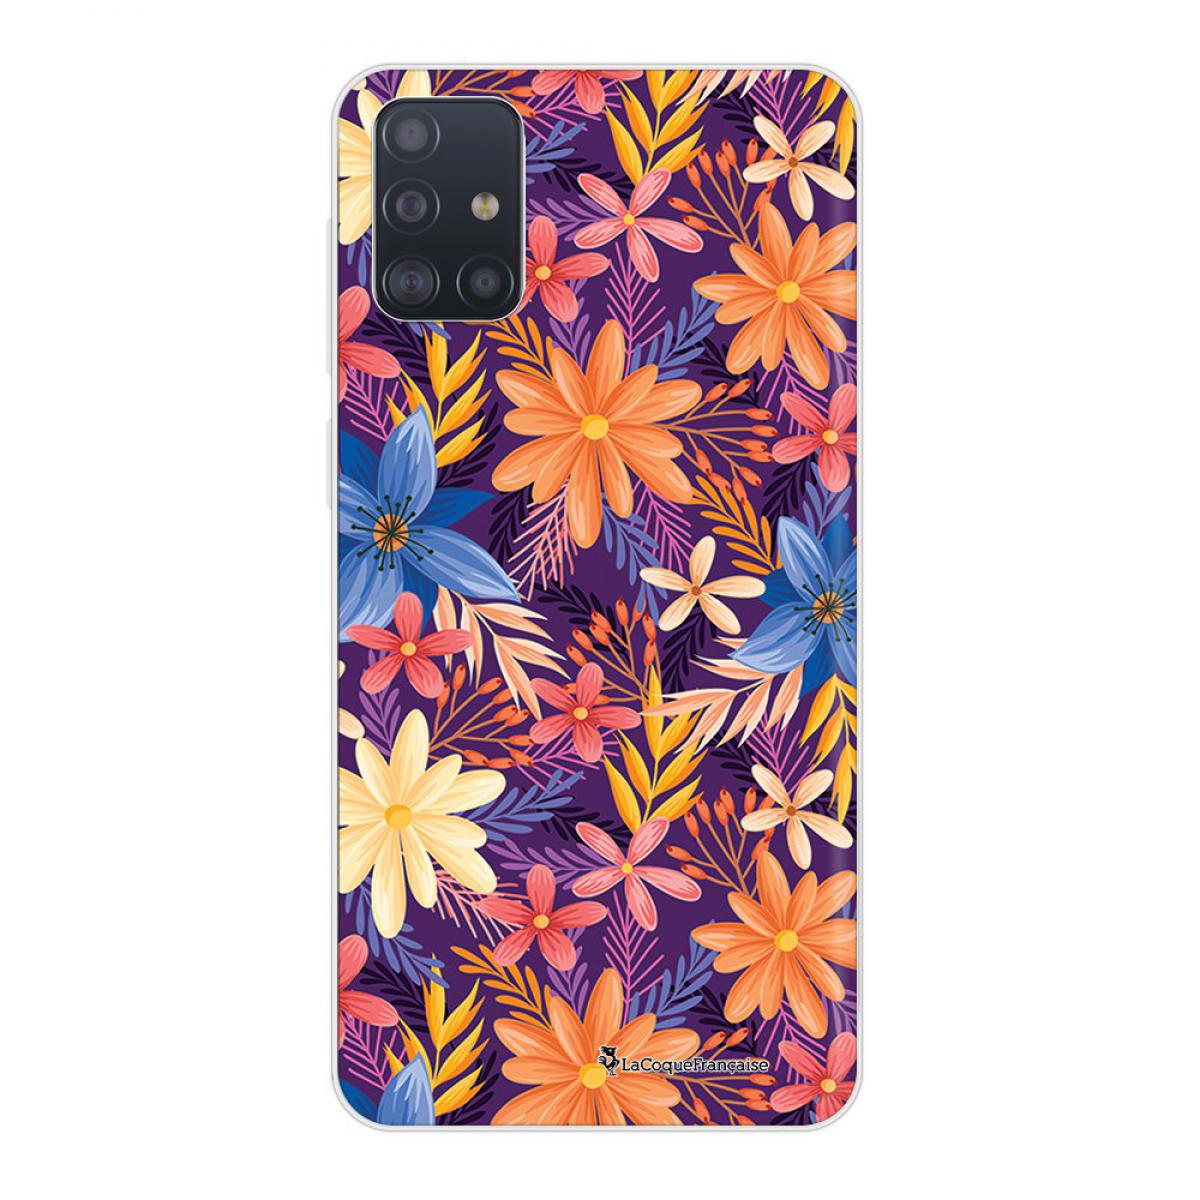 La Coque Francaise - Coque Samsung Galaxy A51 5G souple transparente Fleurs violettes et oranges Motif Ecriture Tendance La Coque Francaise - Coque, étui smartphone